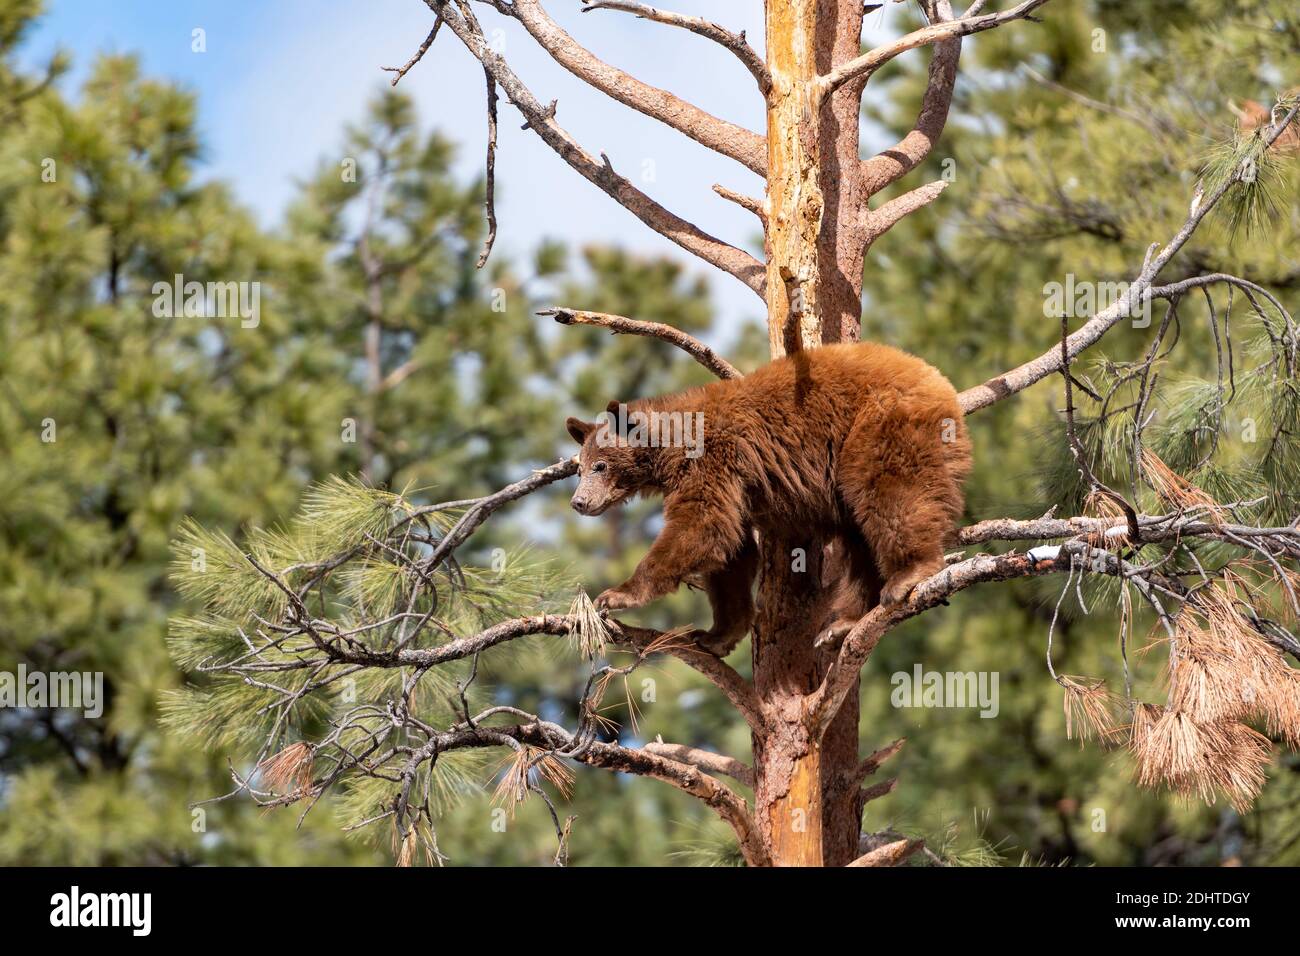 Un giovane orso nero americano (Ursus americanus) che arrampica l'albero a Bearizona, Arizona, Stati Uniti. (Condizioni controllate). Foto Stock